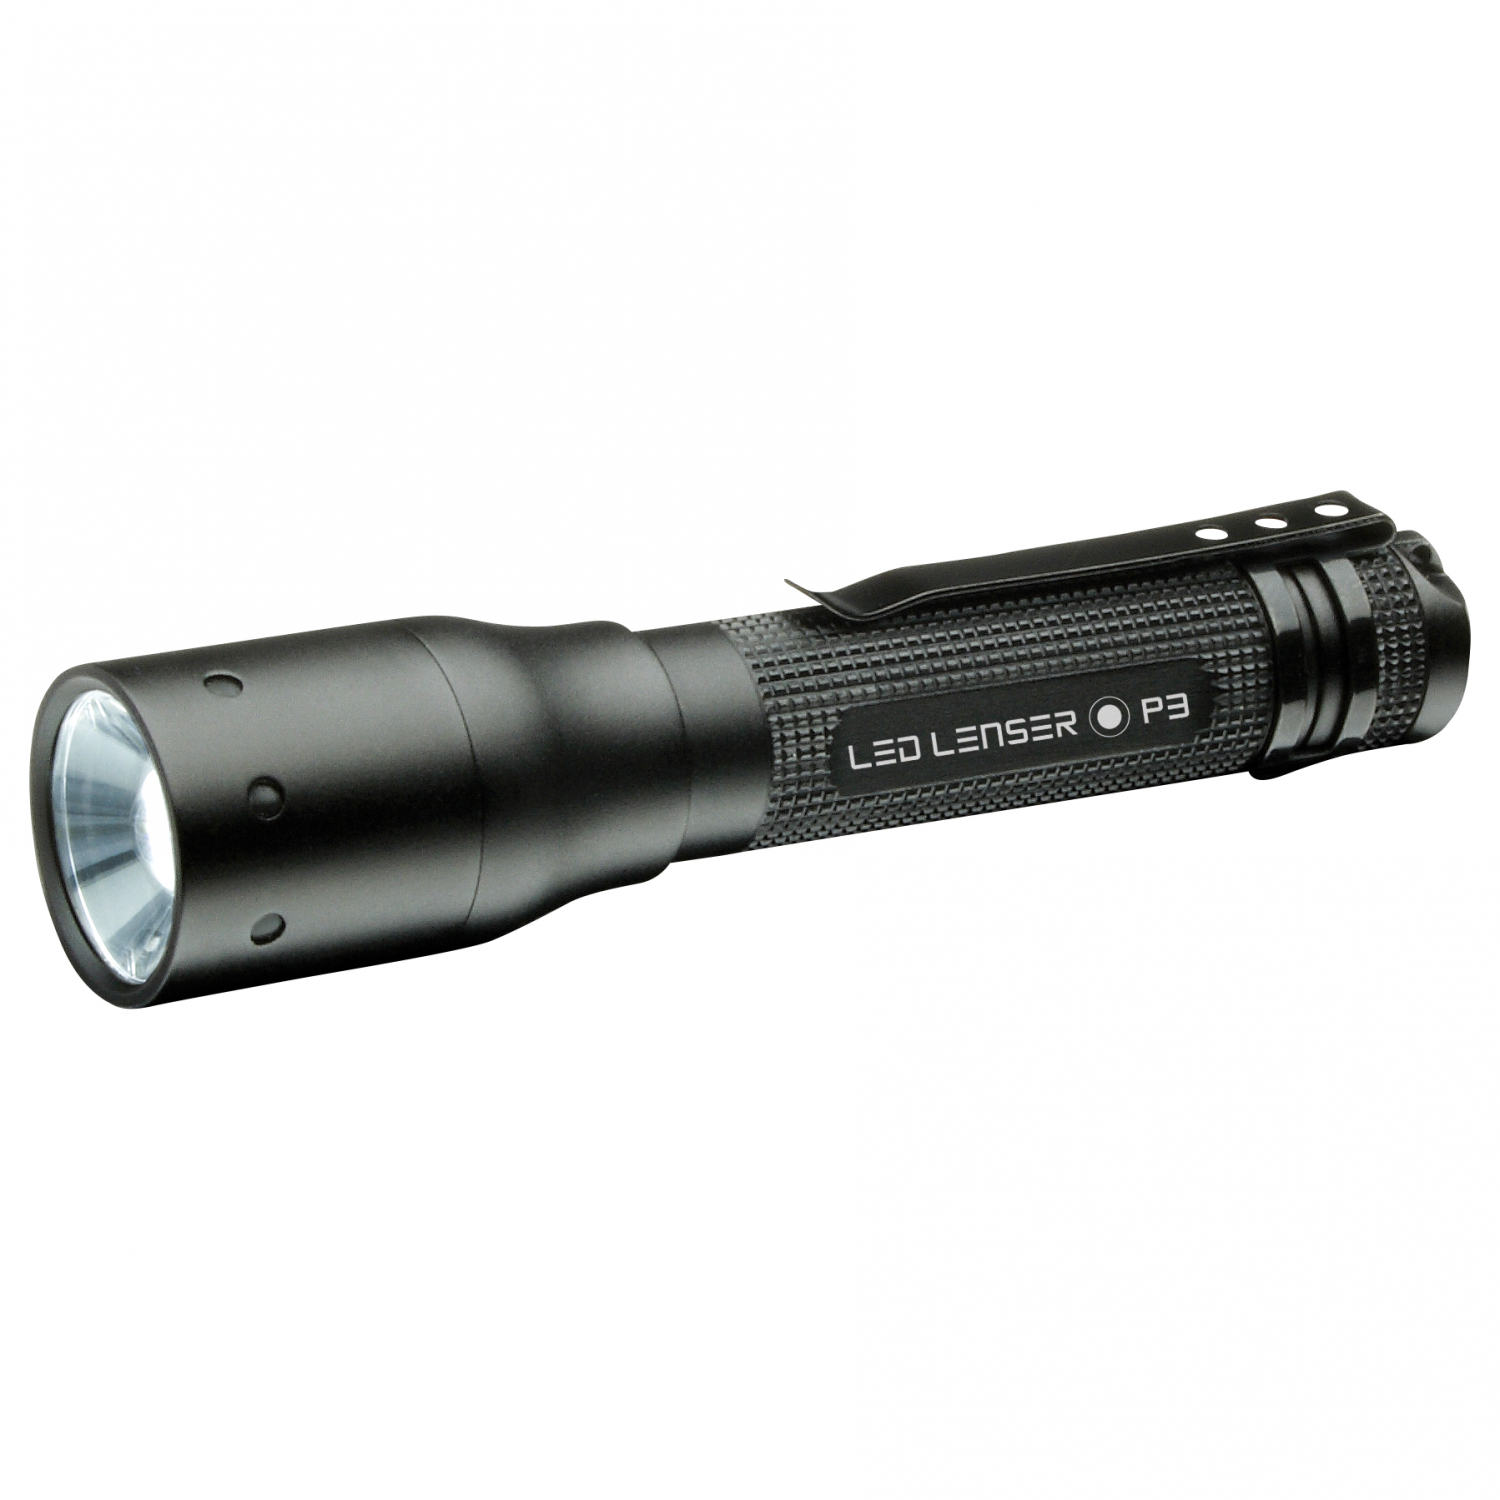 Led Lenser LED LENSER Taschenlampe P 